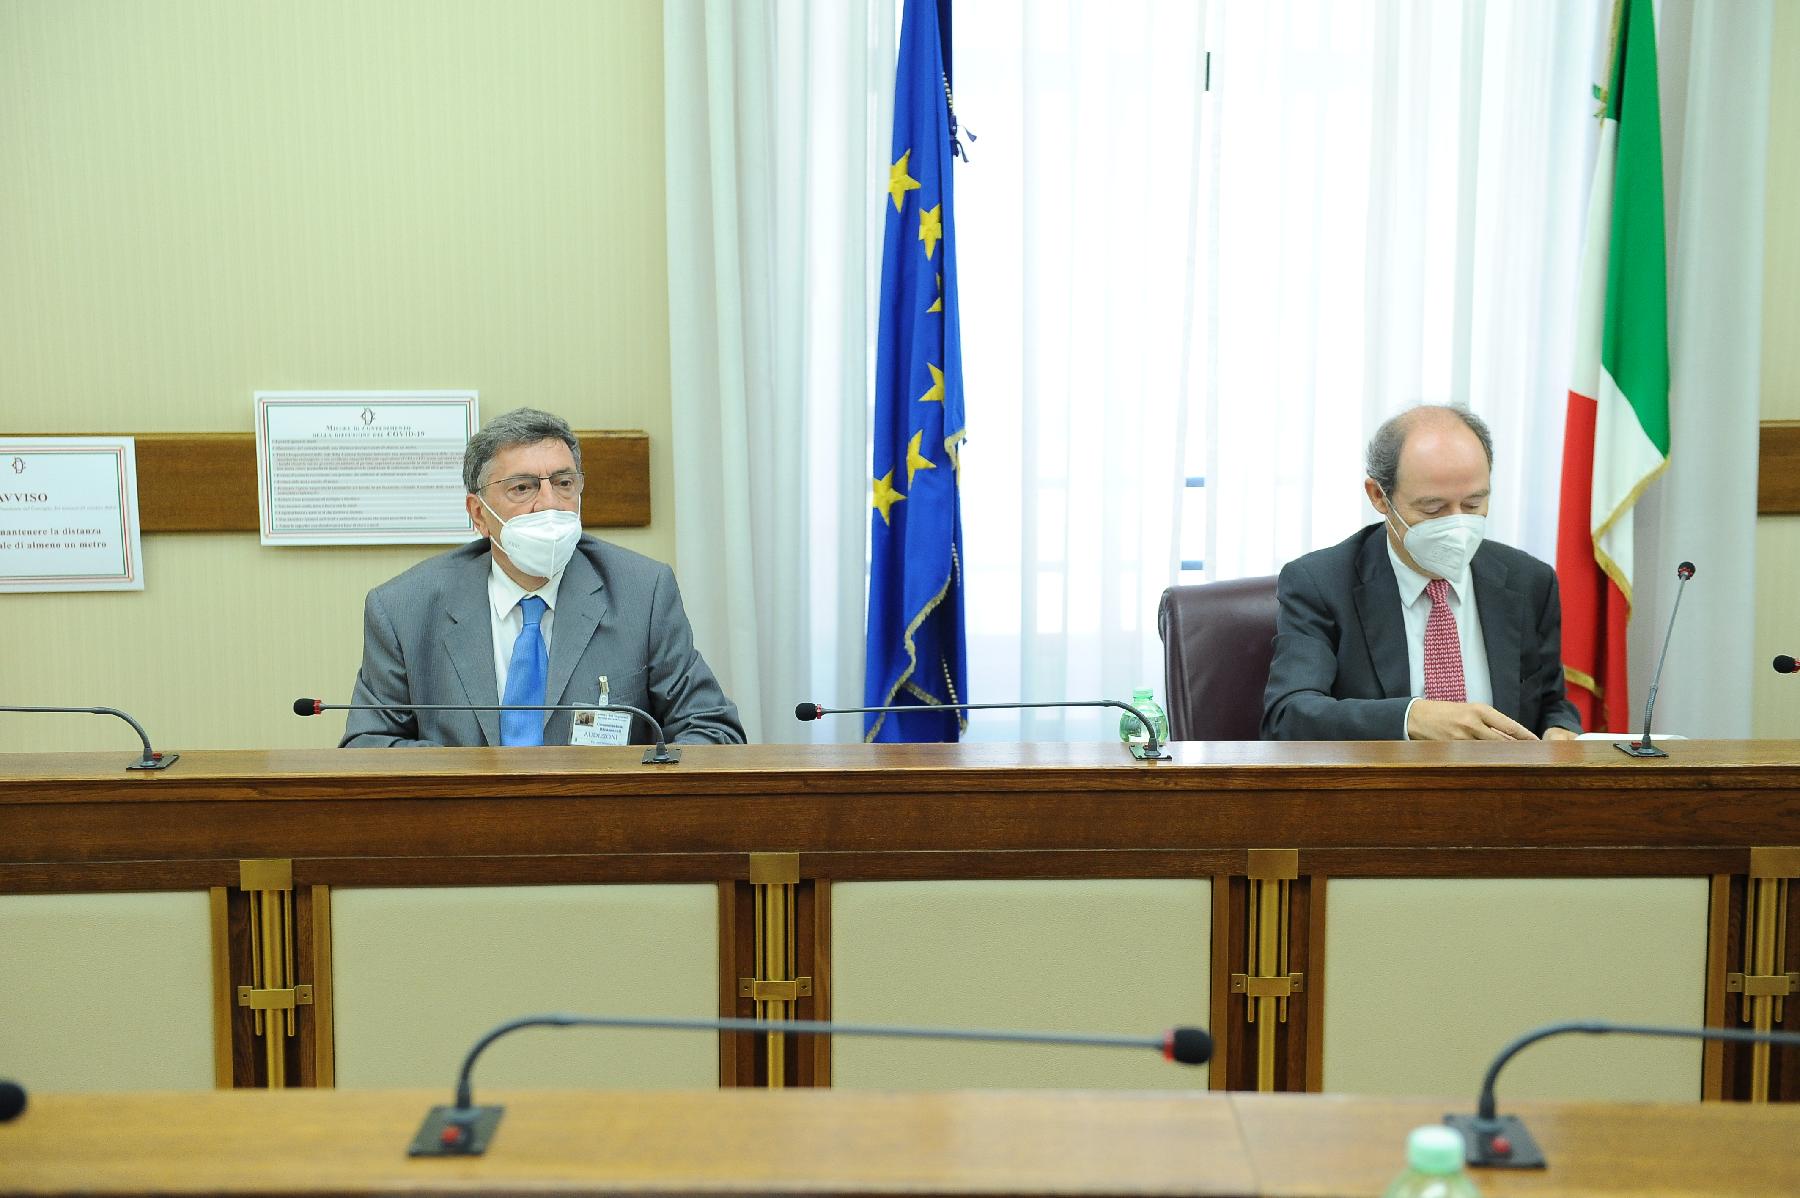 In Commissione d'inchiesta sulla morte di David Rossi, audizione del Procuratore della Repubblica di Siena, Salvatore Vitello.